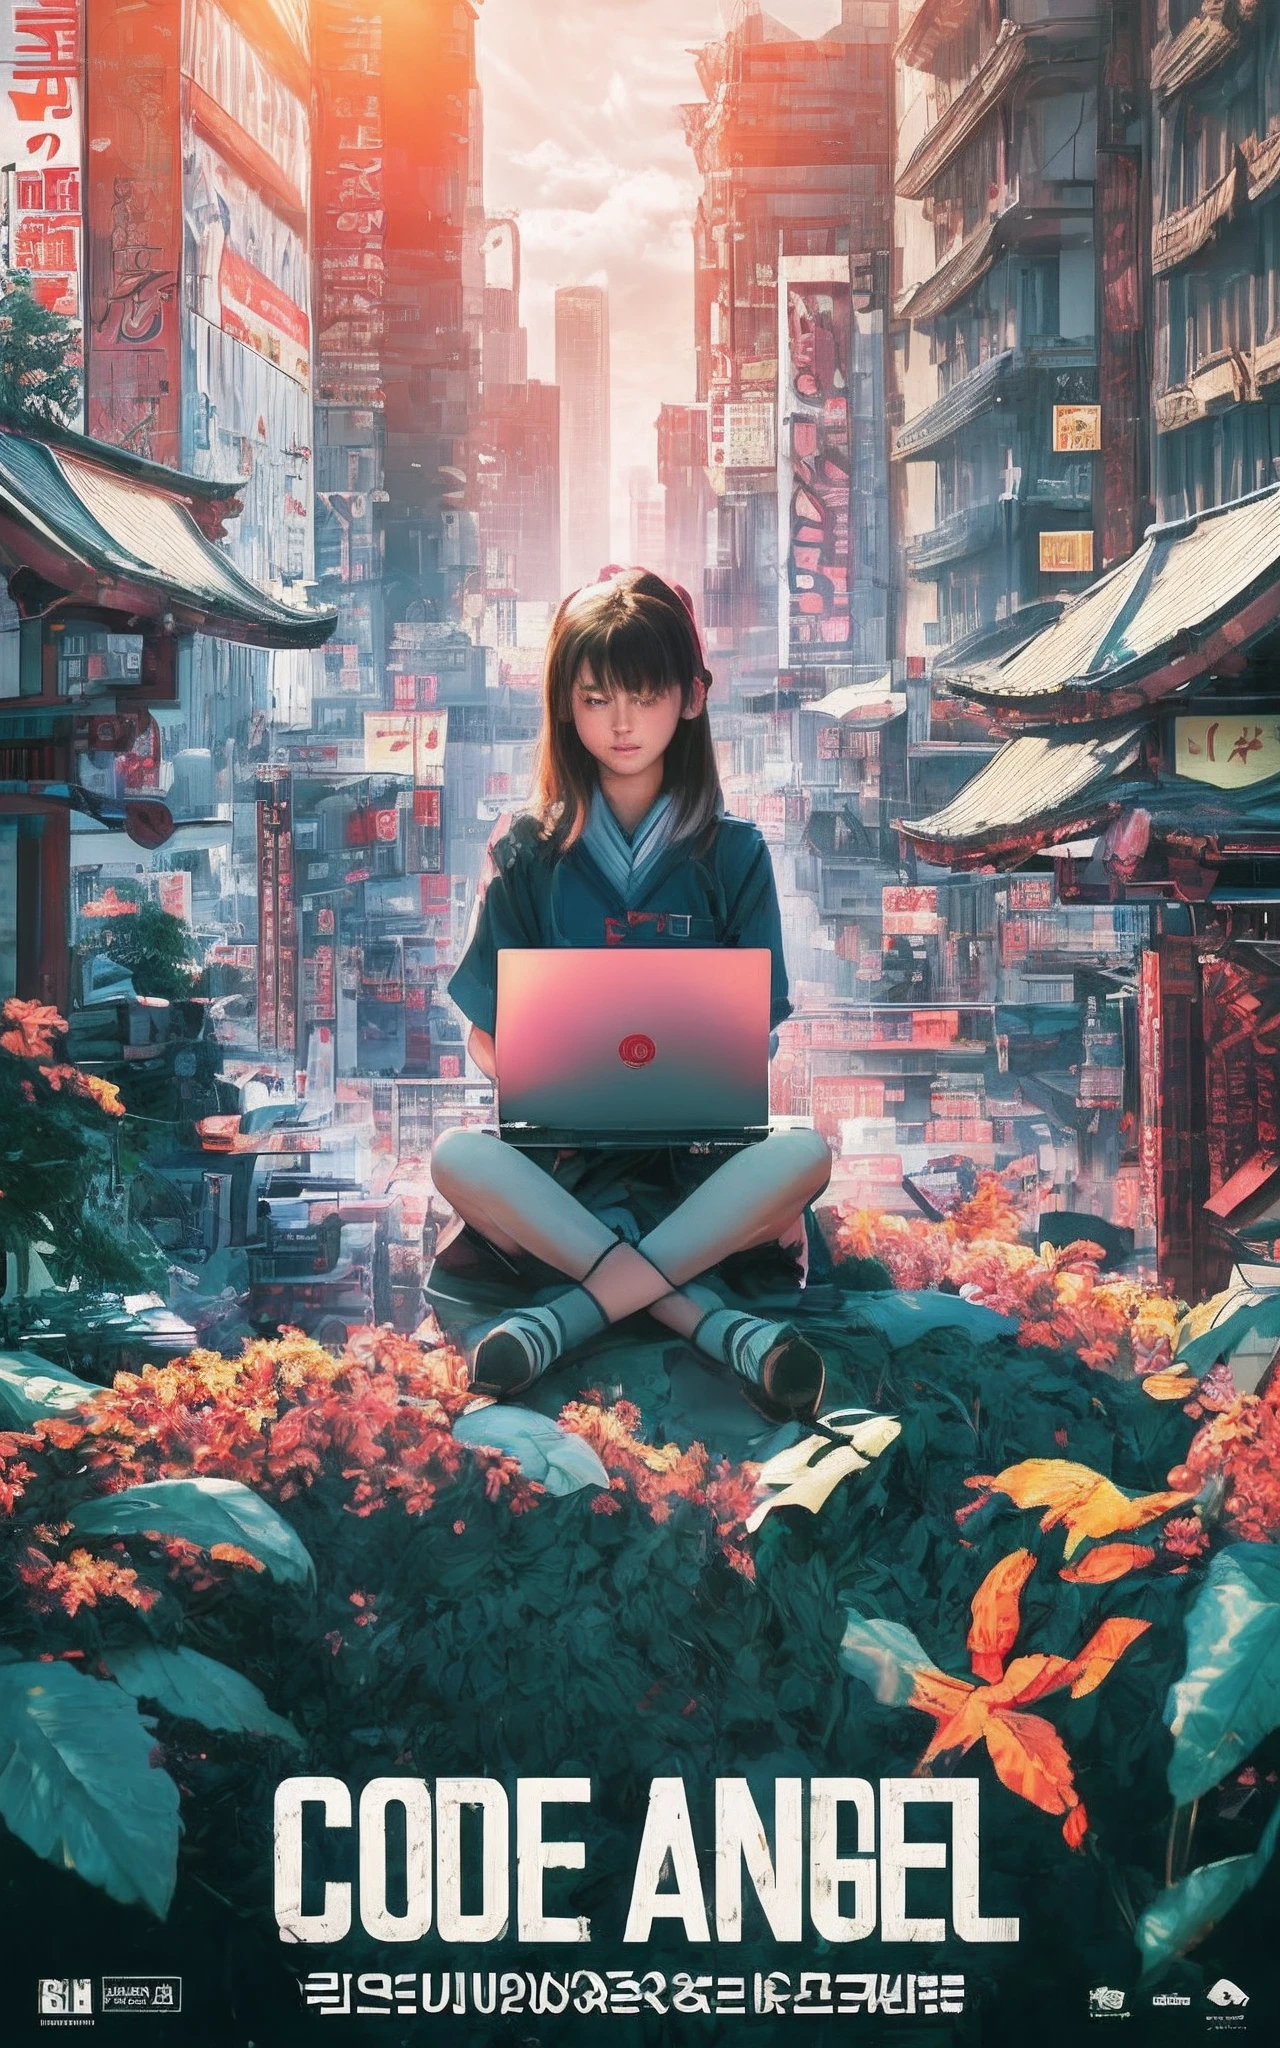 fotografía cinematográfica cartel de película, mostrando a una niña de 13 años sentada en un santuario en un valle entre edificios en Akihabara, Tokio, Operar una computadora portátil. El sol de la mañana brilla. 8k, mejor renderizado, texto superior dice "Ángel del código"